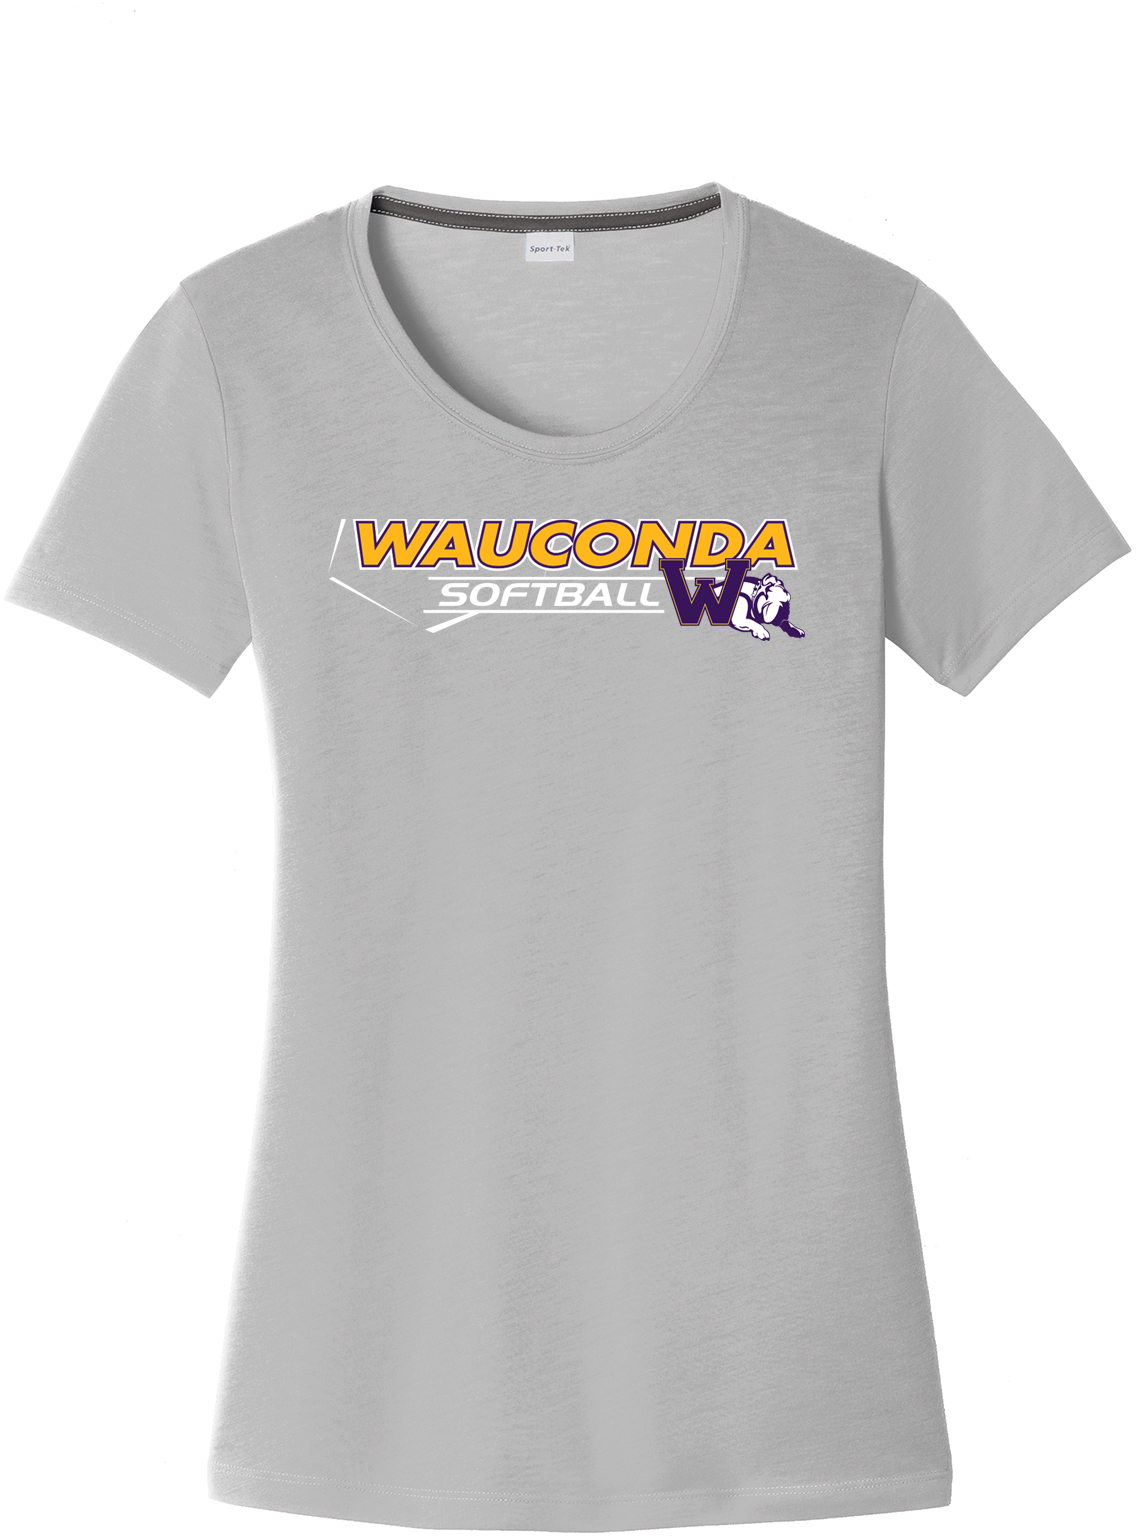 Wauconda Softball Women's CottonTouch Performance T-Shirt